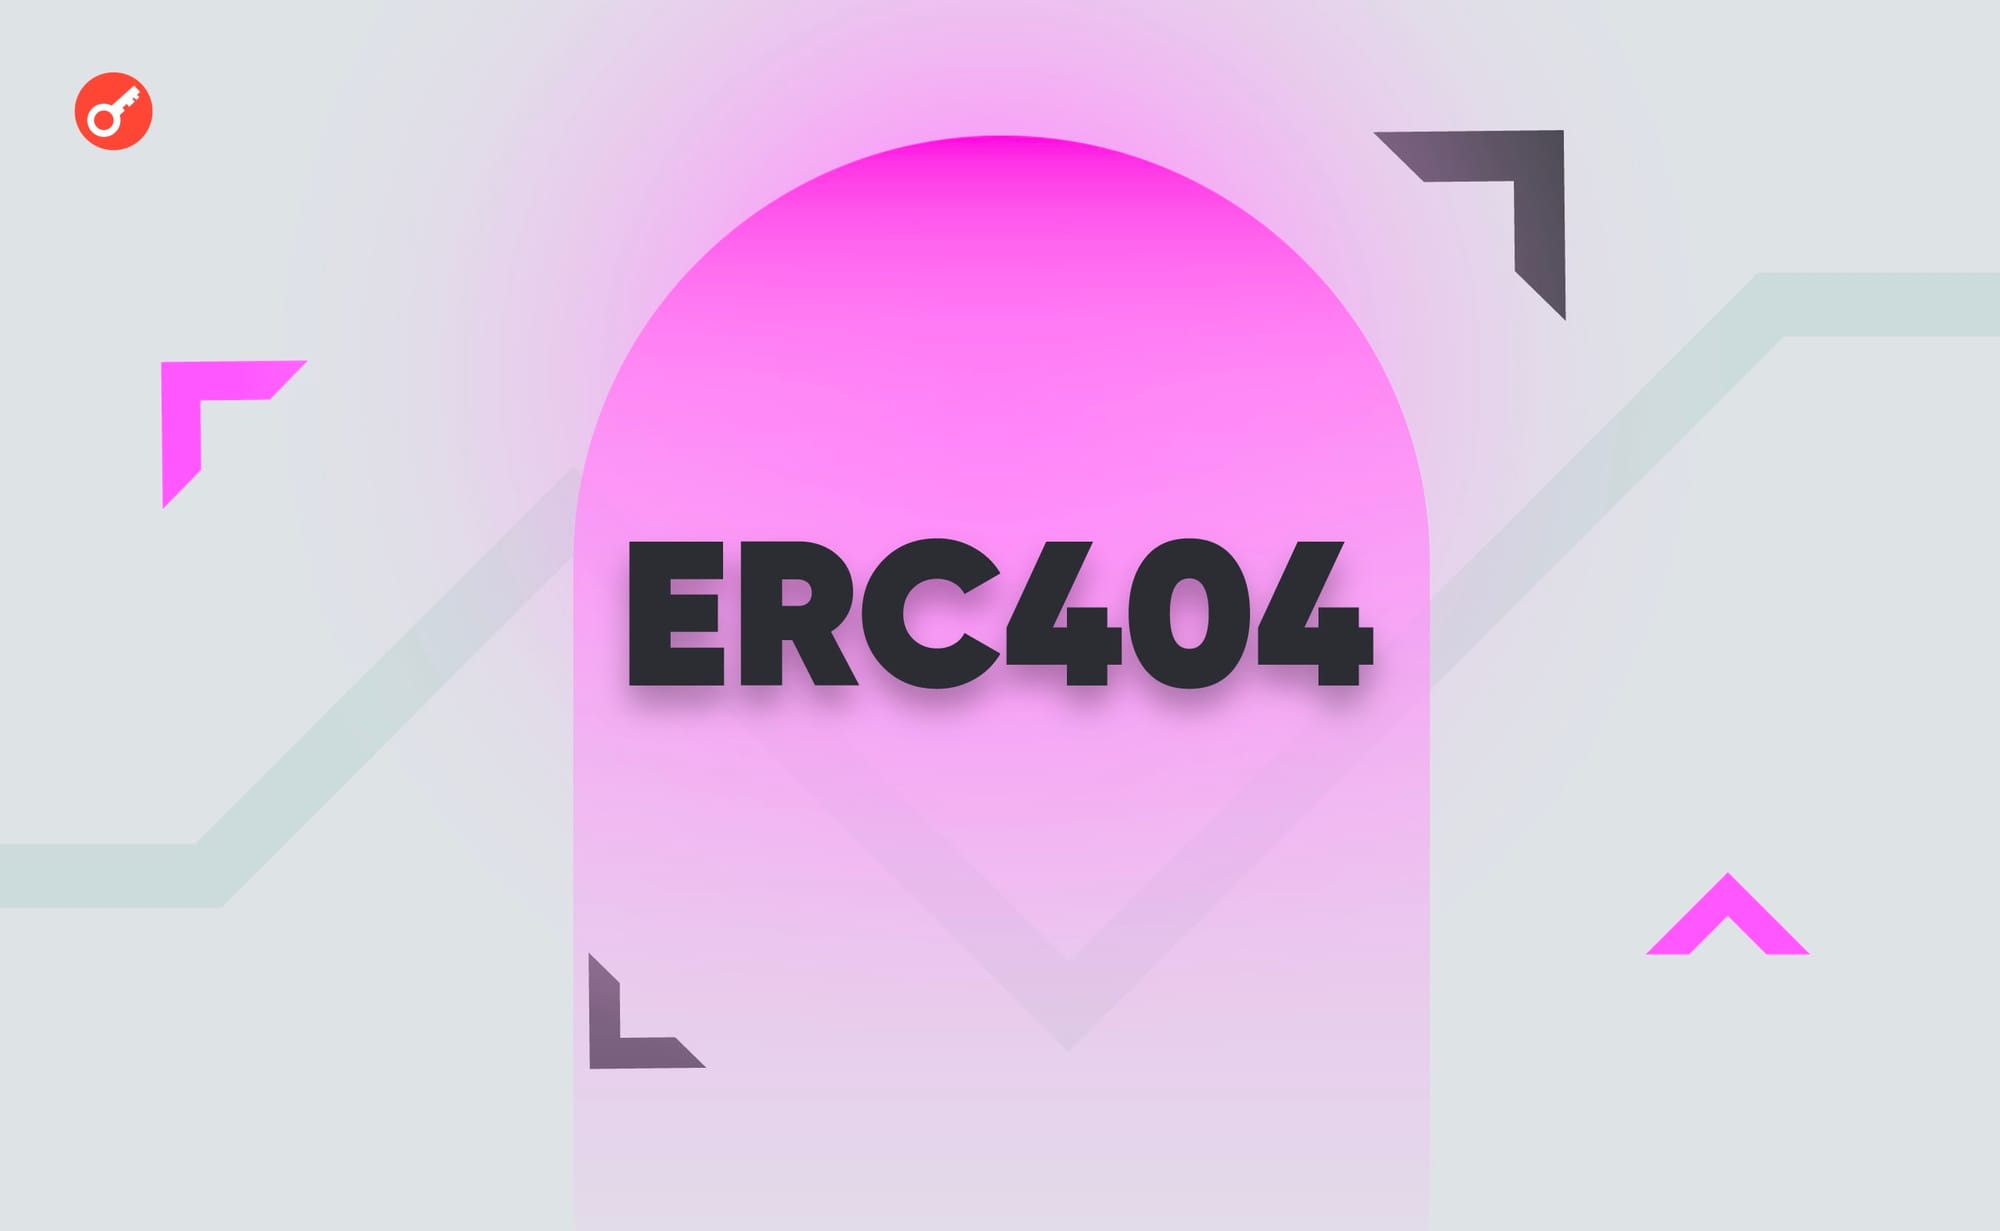 开发商提出了一个替代ERC-404低佣金